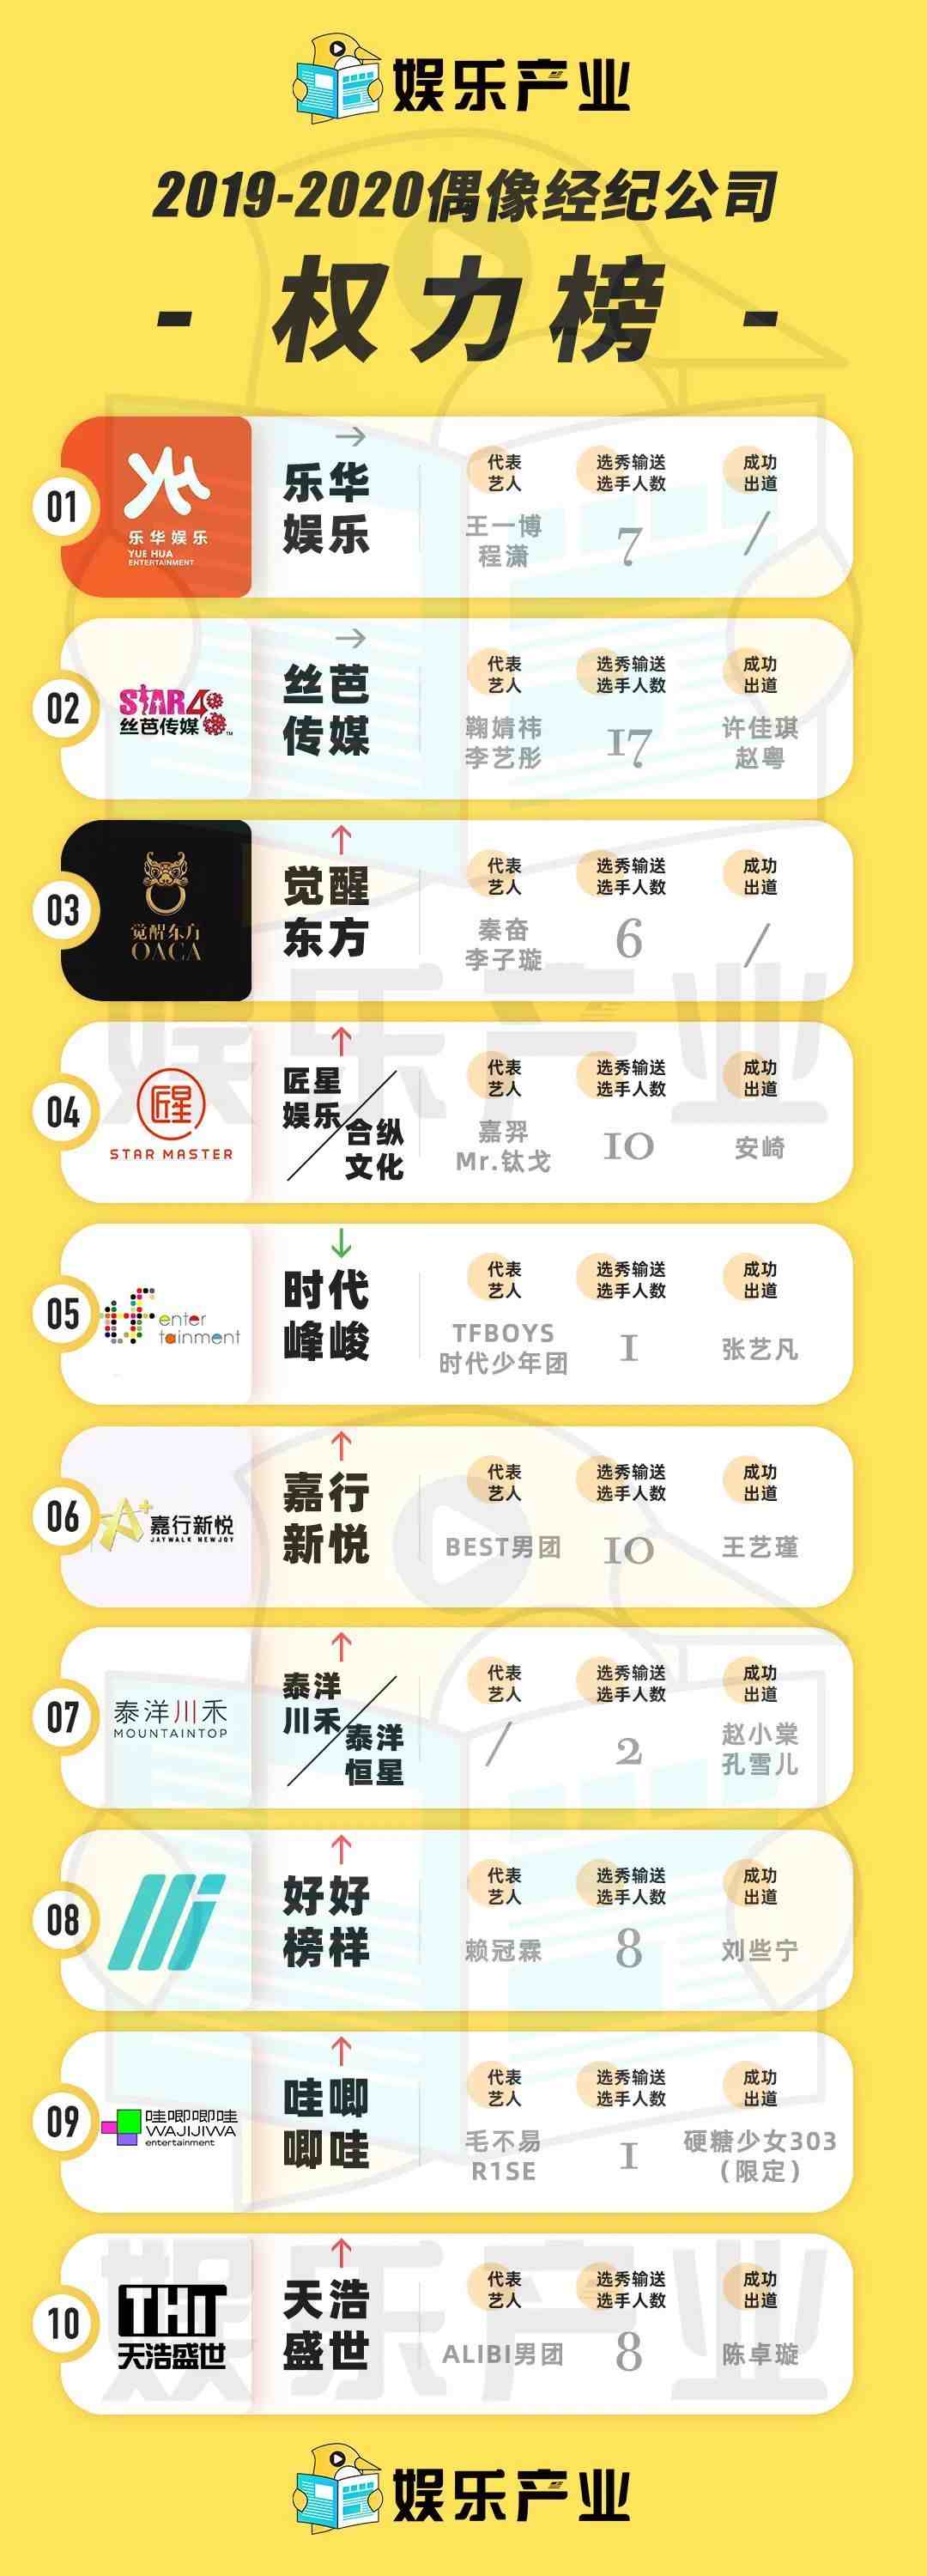 艺人经纪公司排名|2020中国经纪公司权力榜